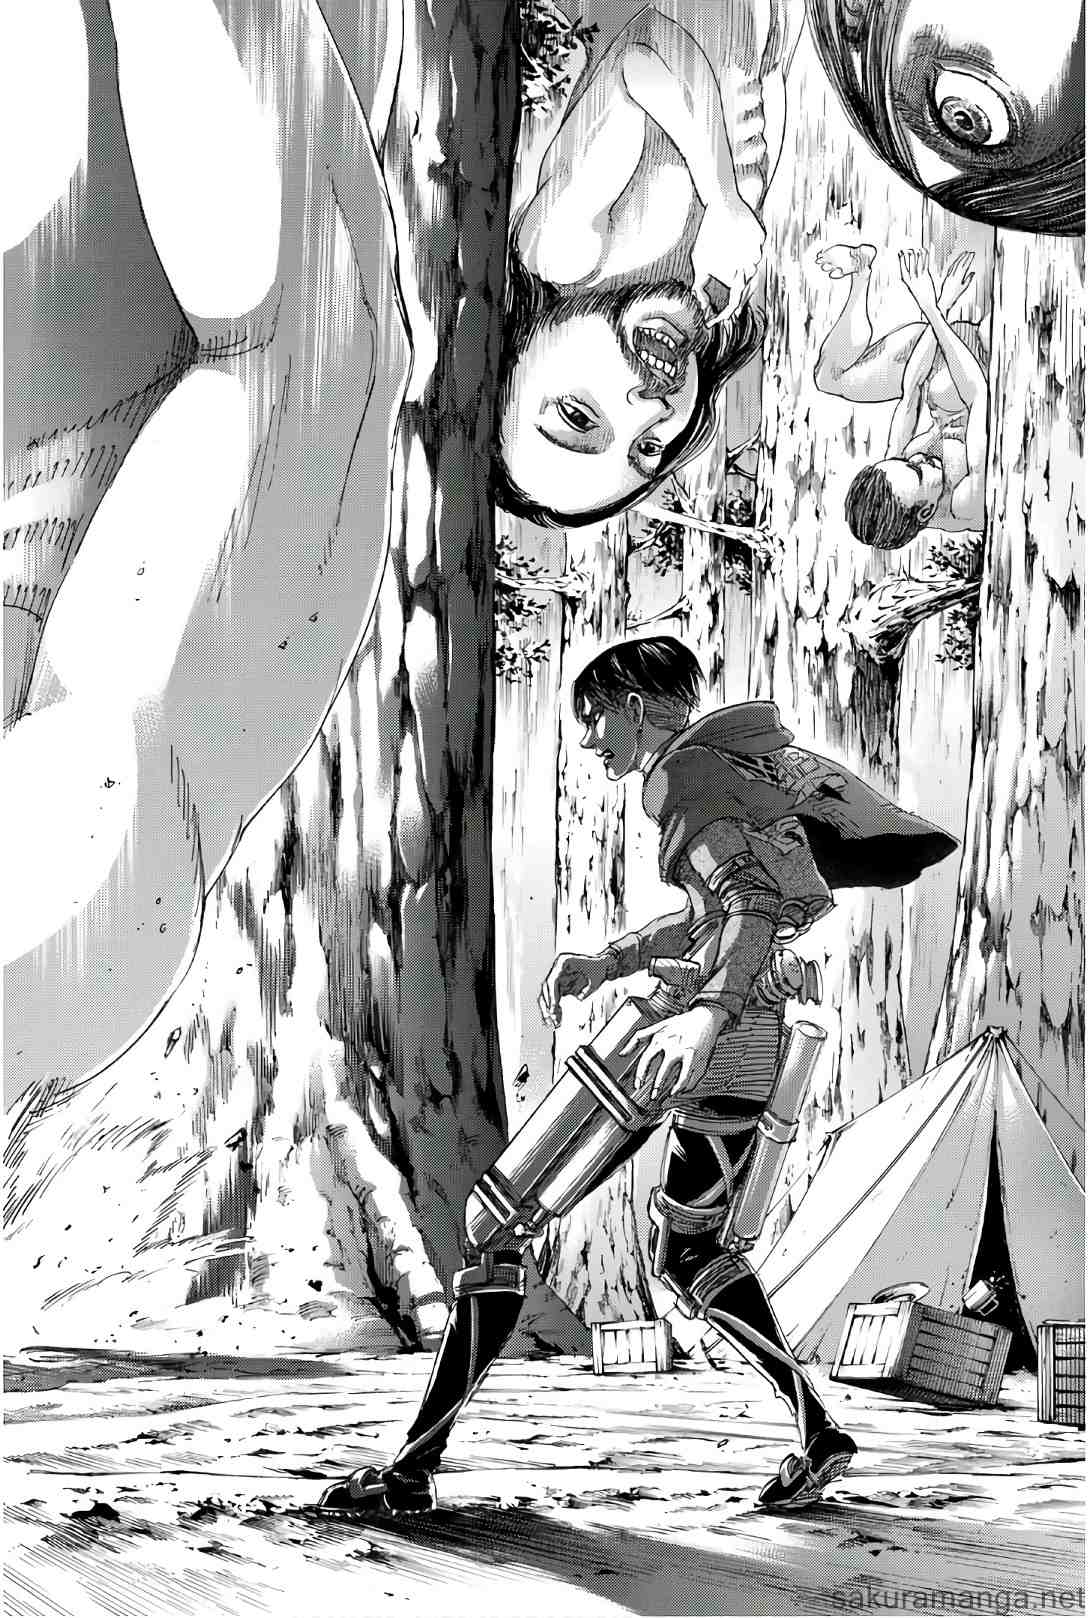 Shingeki no Kyojin 進撃の巨人